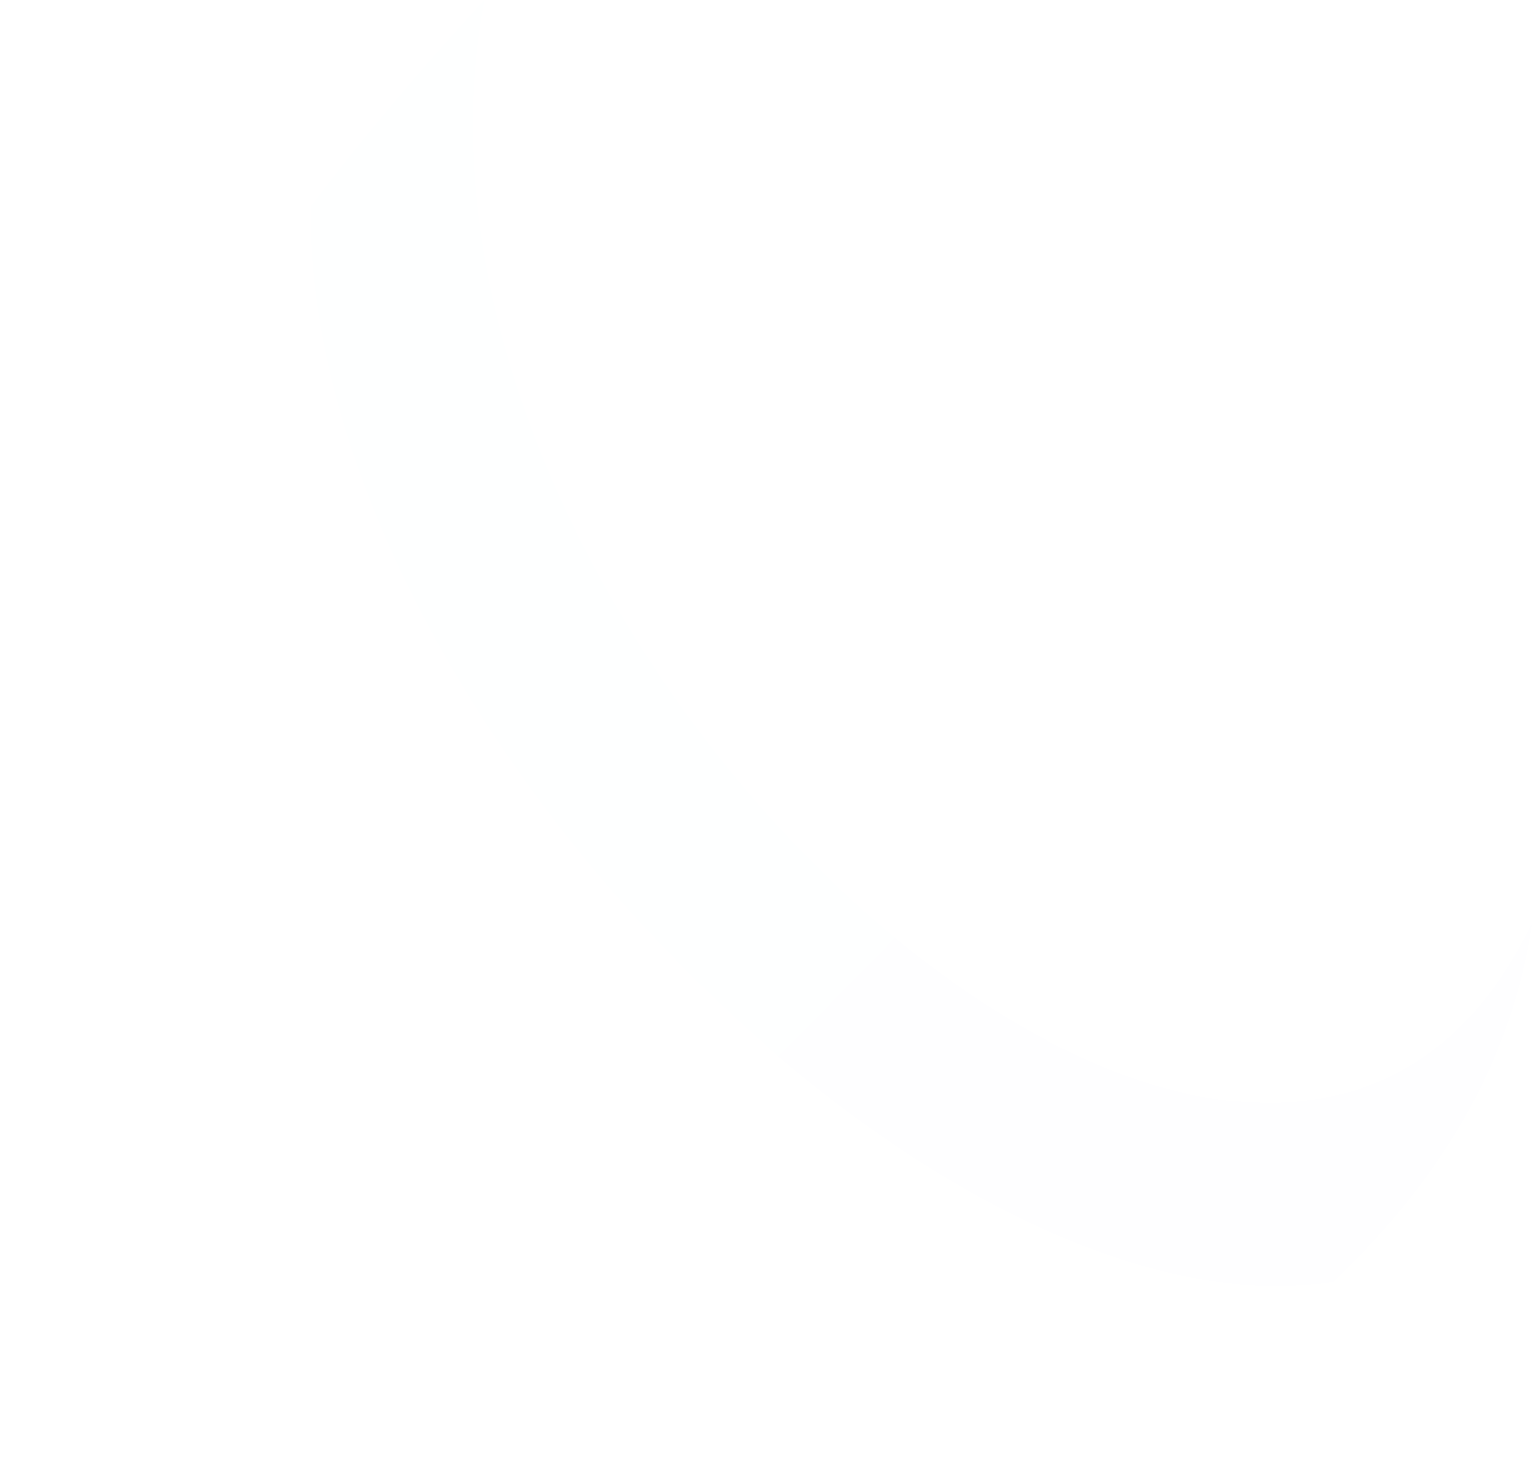 LifeStance Health Group logo pour fonds sombres (PNG transparent)